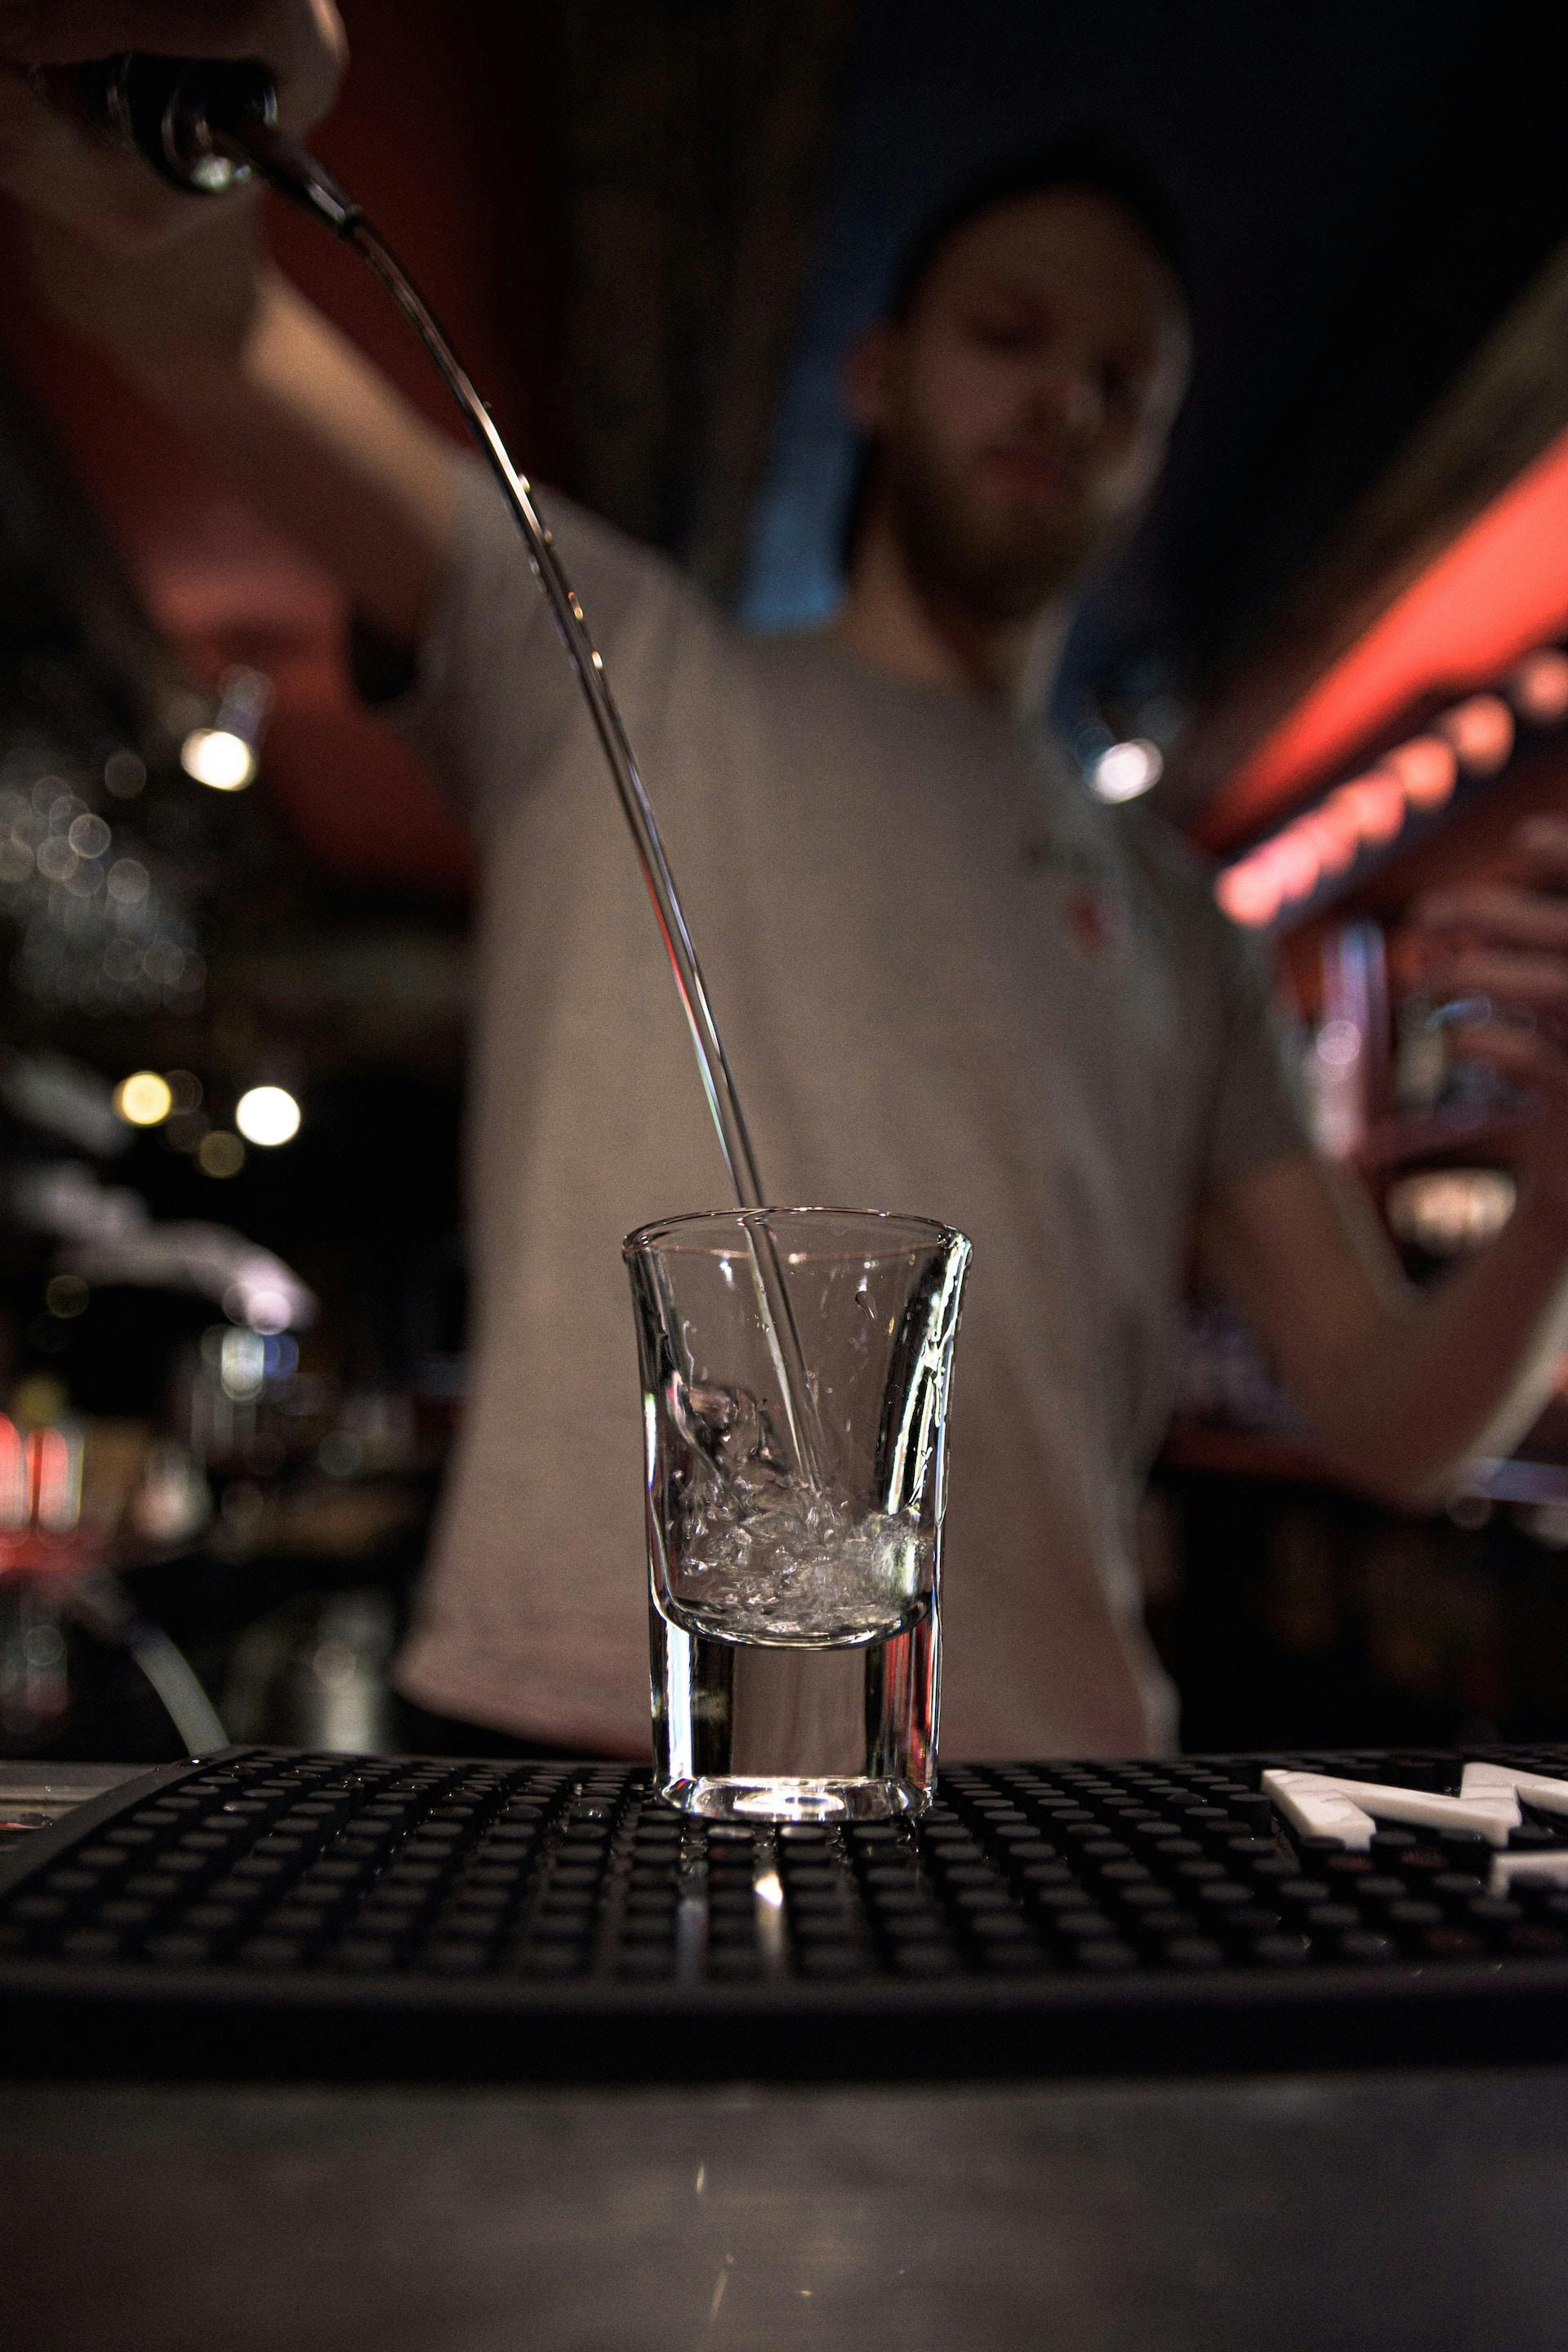 durchsichtige Flüssigkeit wird in Shot Glas geschüttet